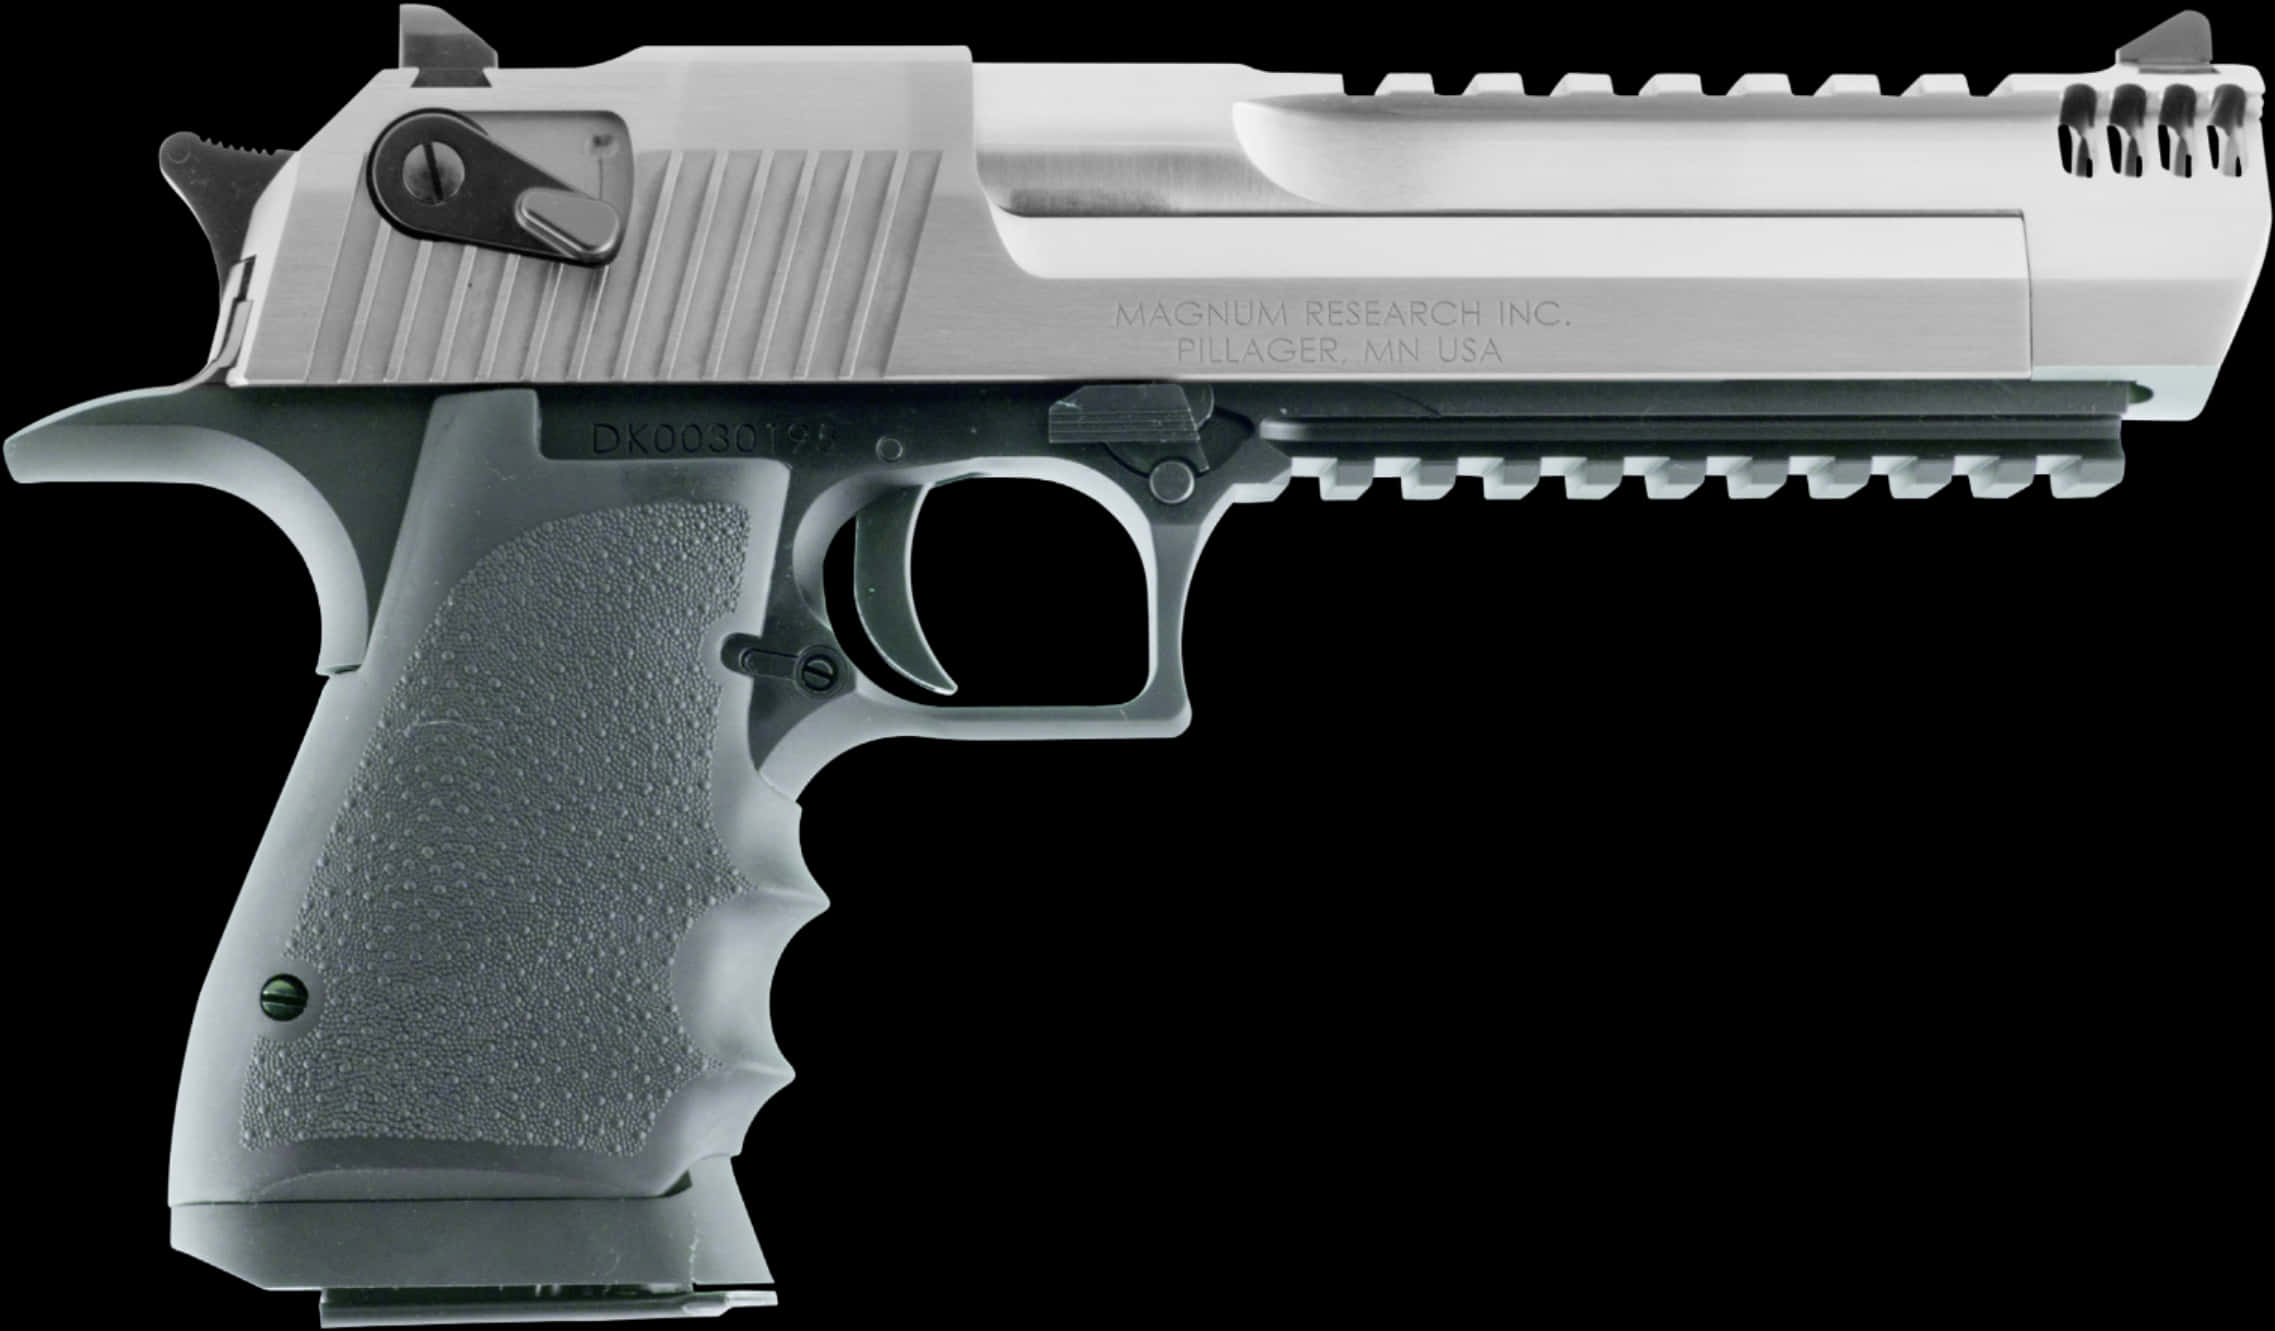 A Silver And Black Handgun